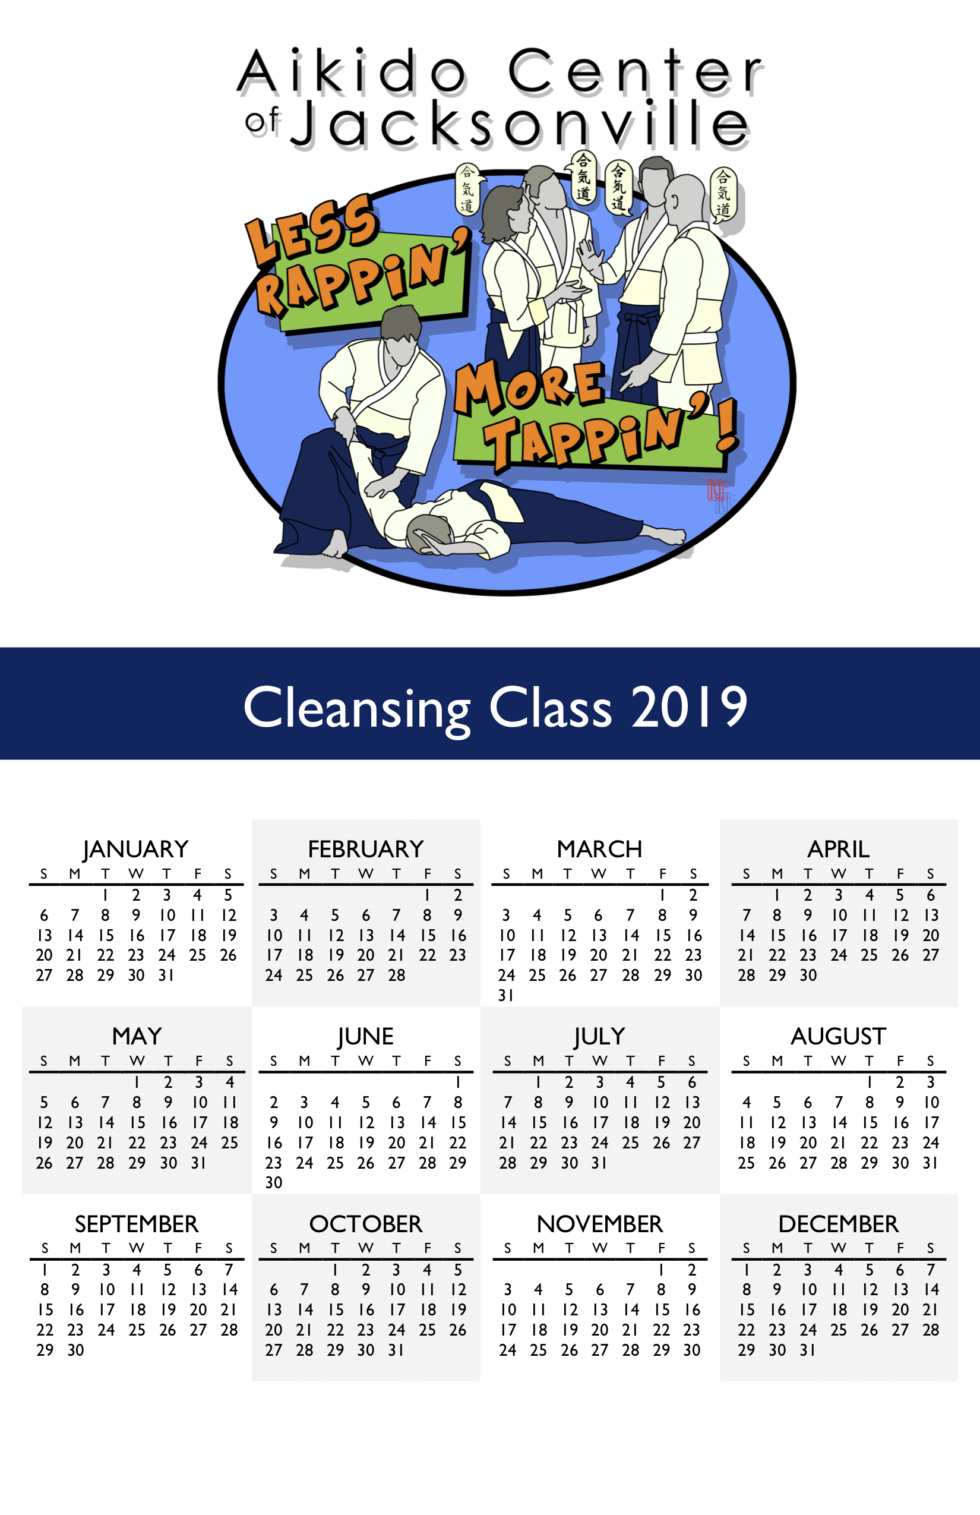 Cleansing Class Calendar 2019